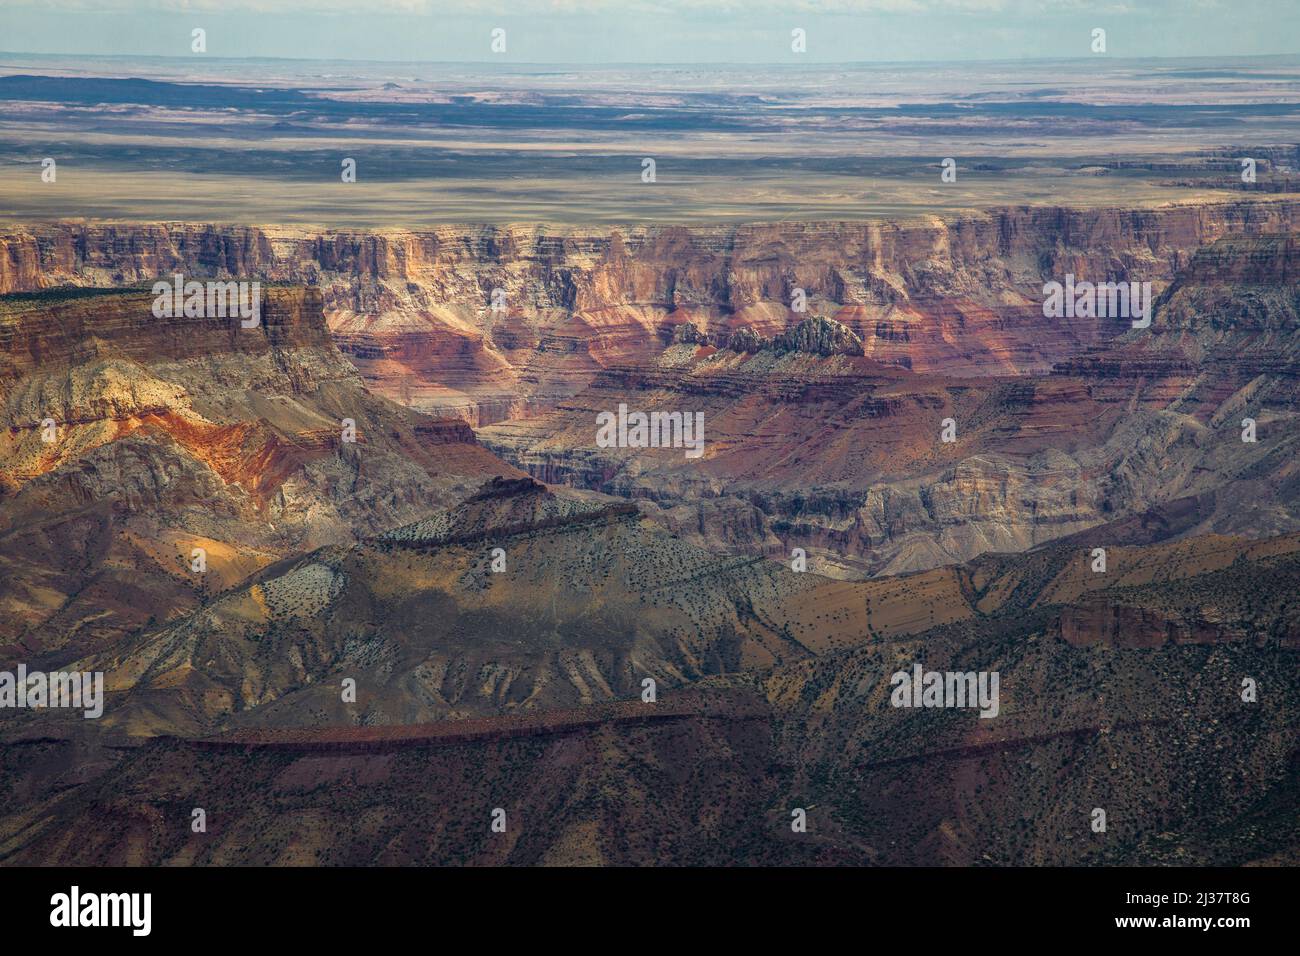 The varied hues of the Grand Canyon at Grand Canyon National Park, Arizona. Stock Photo